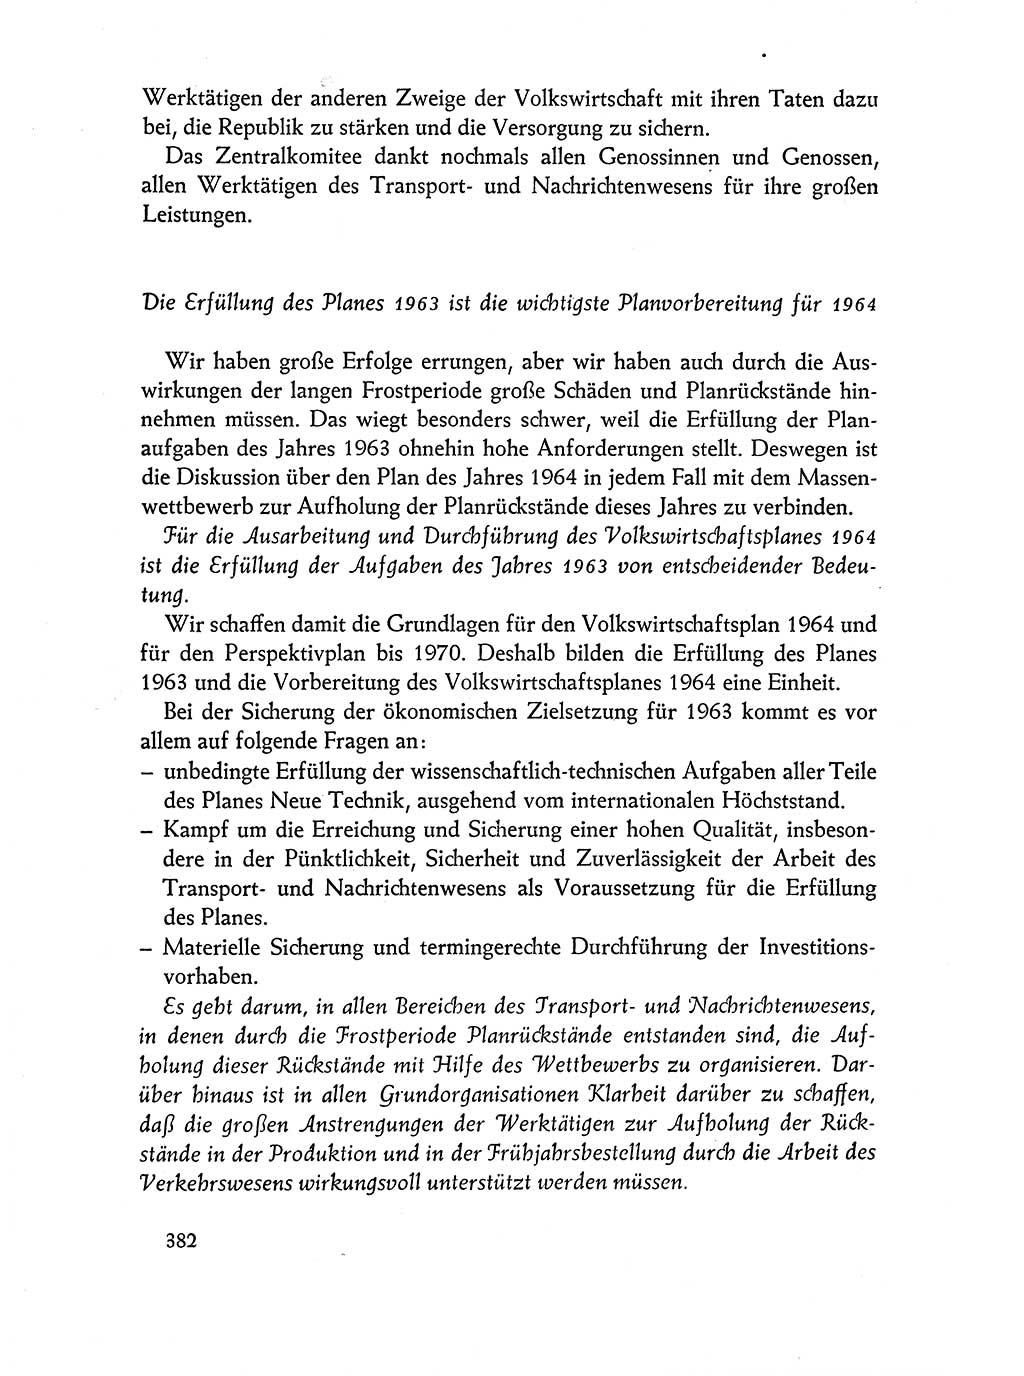 Dokumente der Sozialistischen Einheitspartei Deutschlands (SED) [Deutsche Demokratische Republik (DDR)] 1962-1963, Seite 382 (Dok. SED DDR 1962-1963, S. 382)